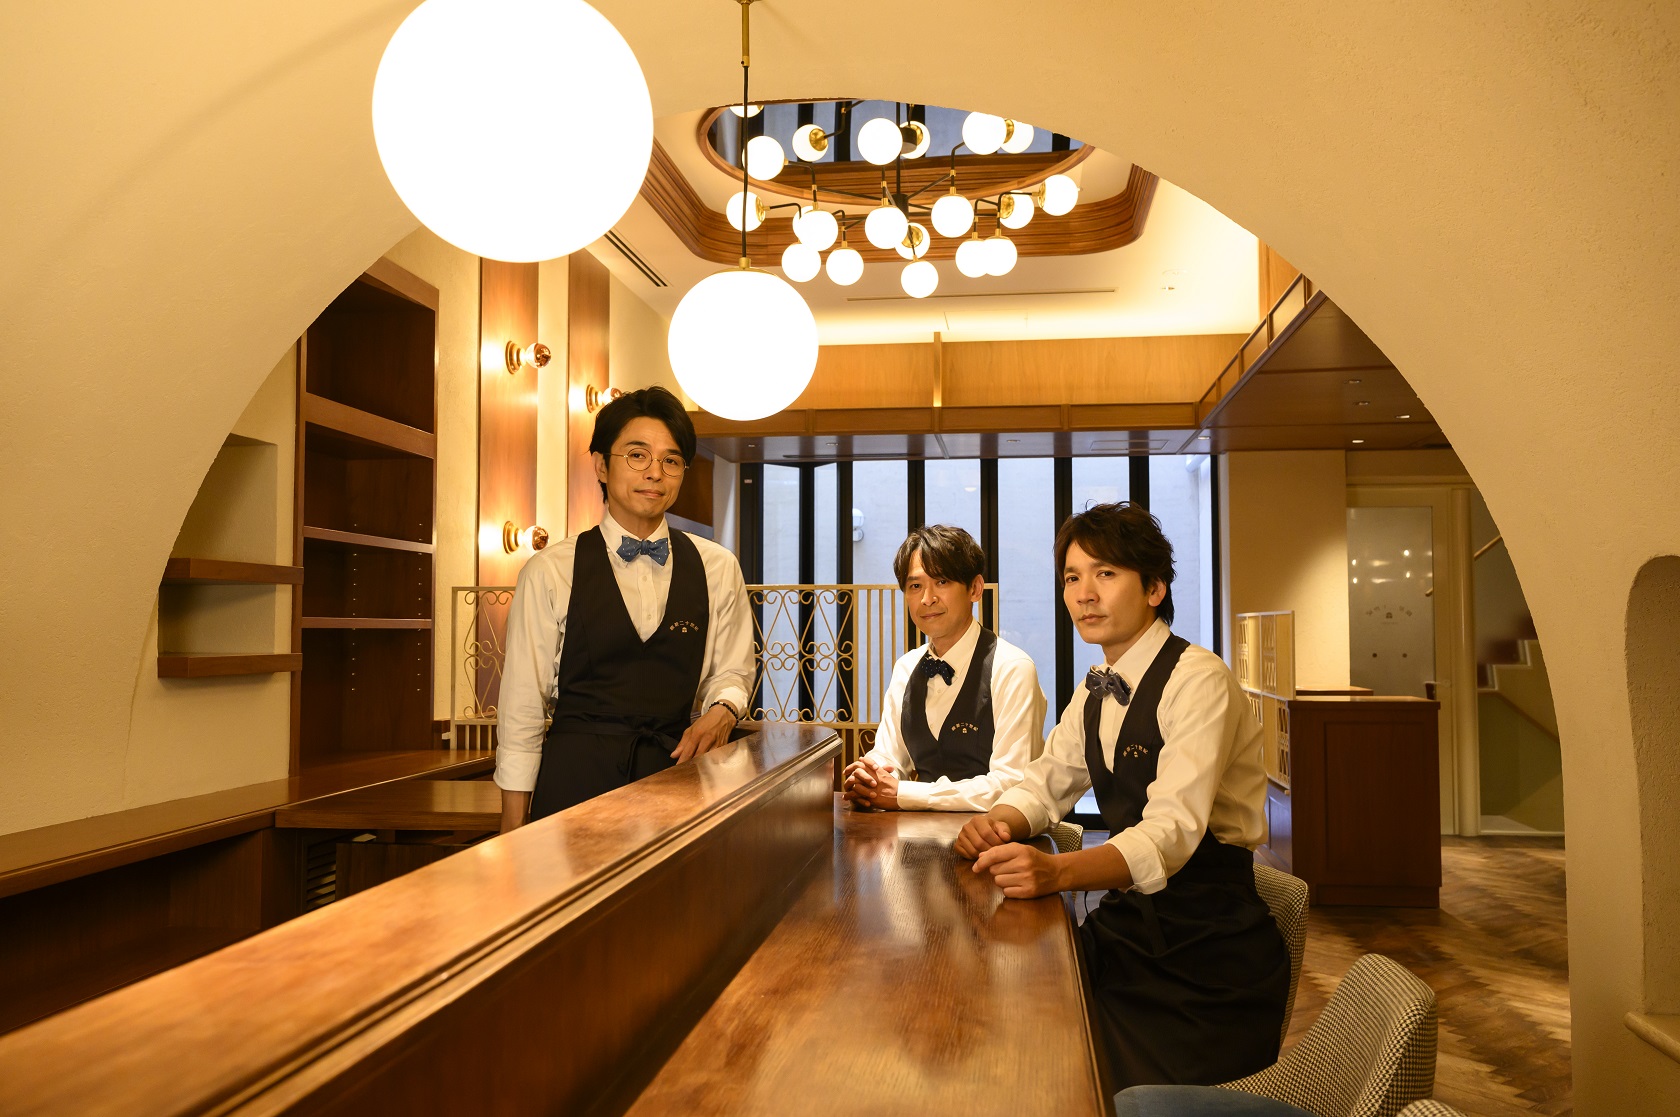 トニセンが経営する喫茶店「喫茶二十世紀」が11・1オープン!坂本、長野、井ノ原が店頭に立つかも!?